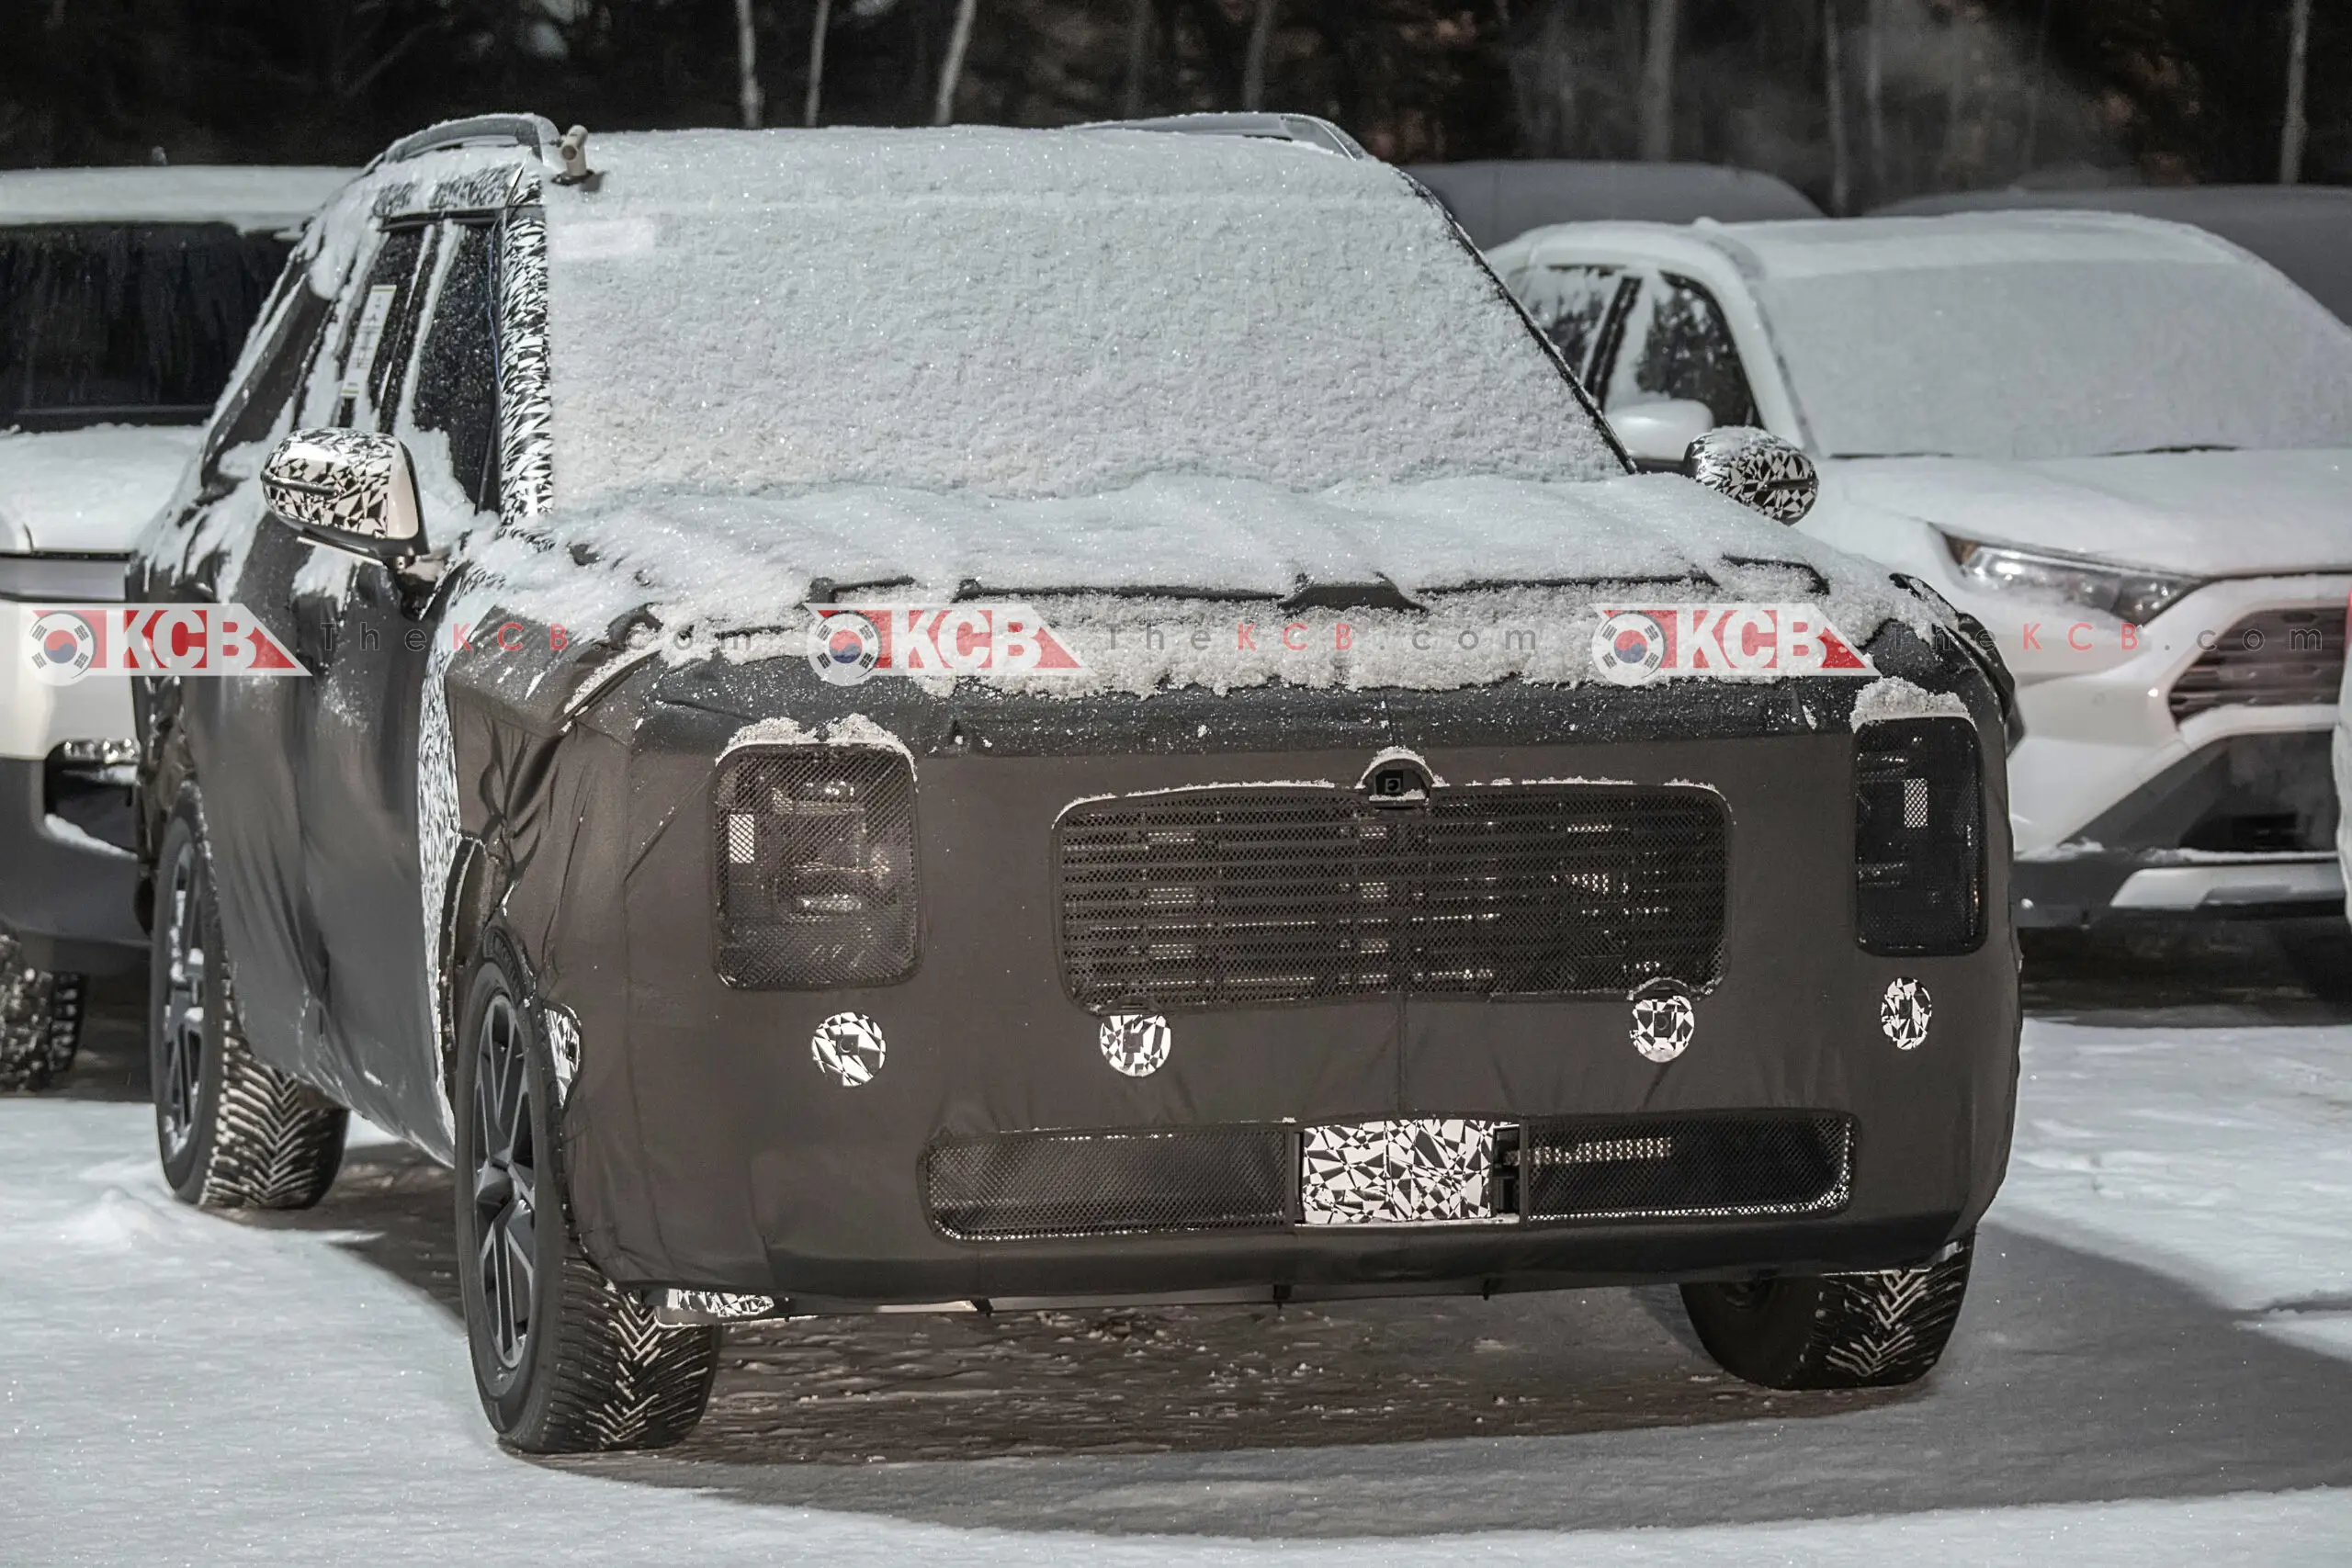 Un vehículo camuflado cubierto de nieve estacionado al aire libre.